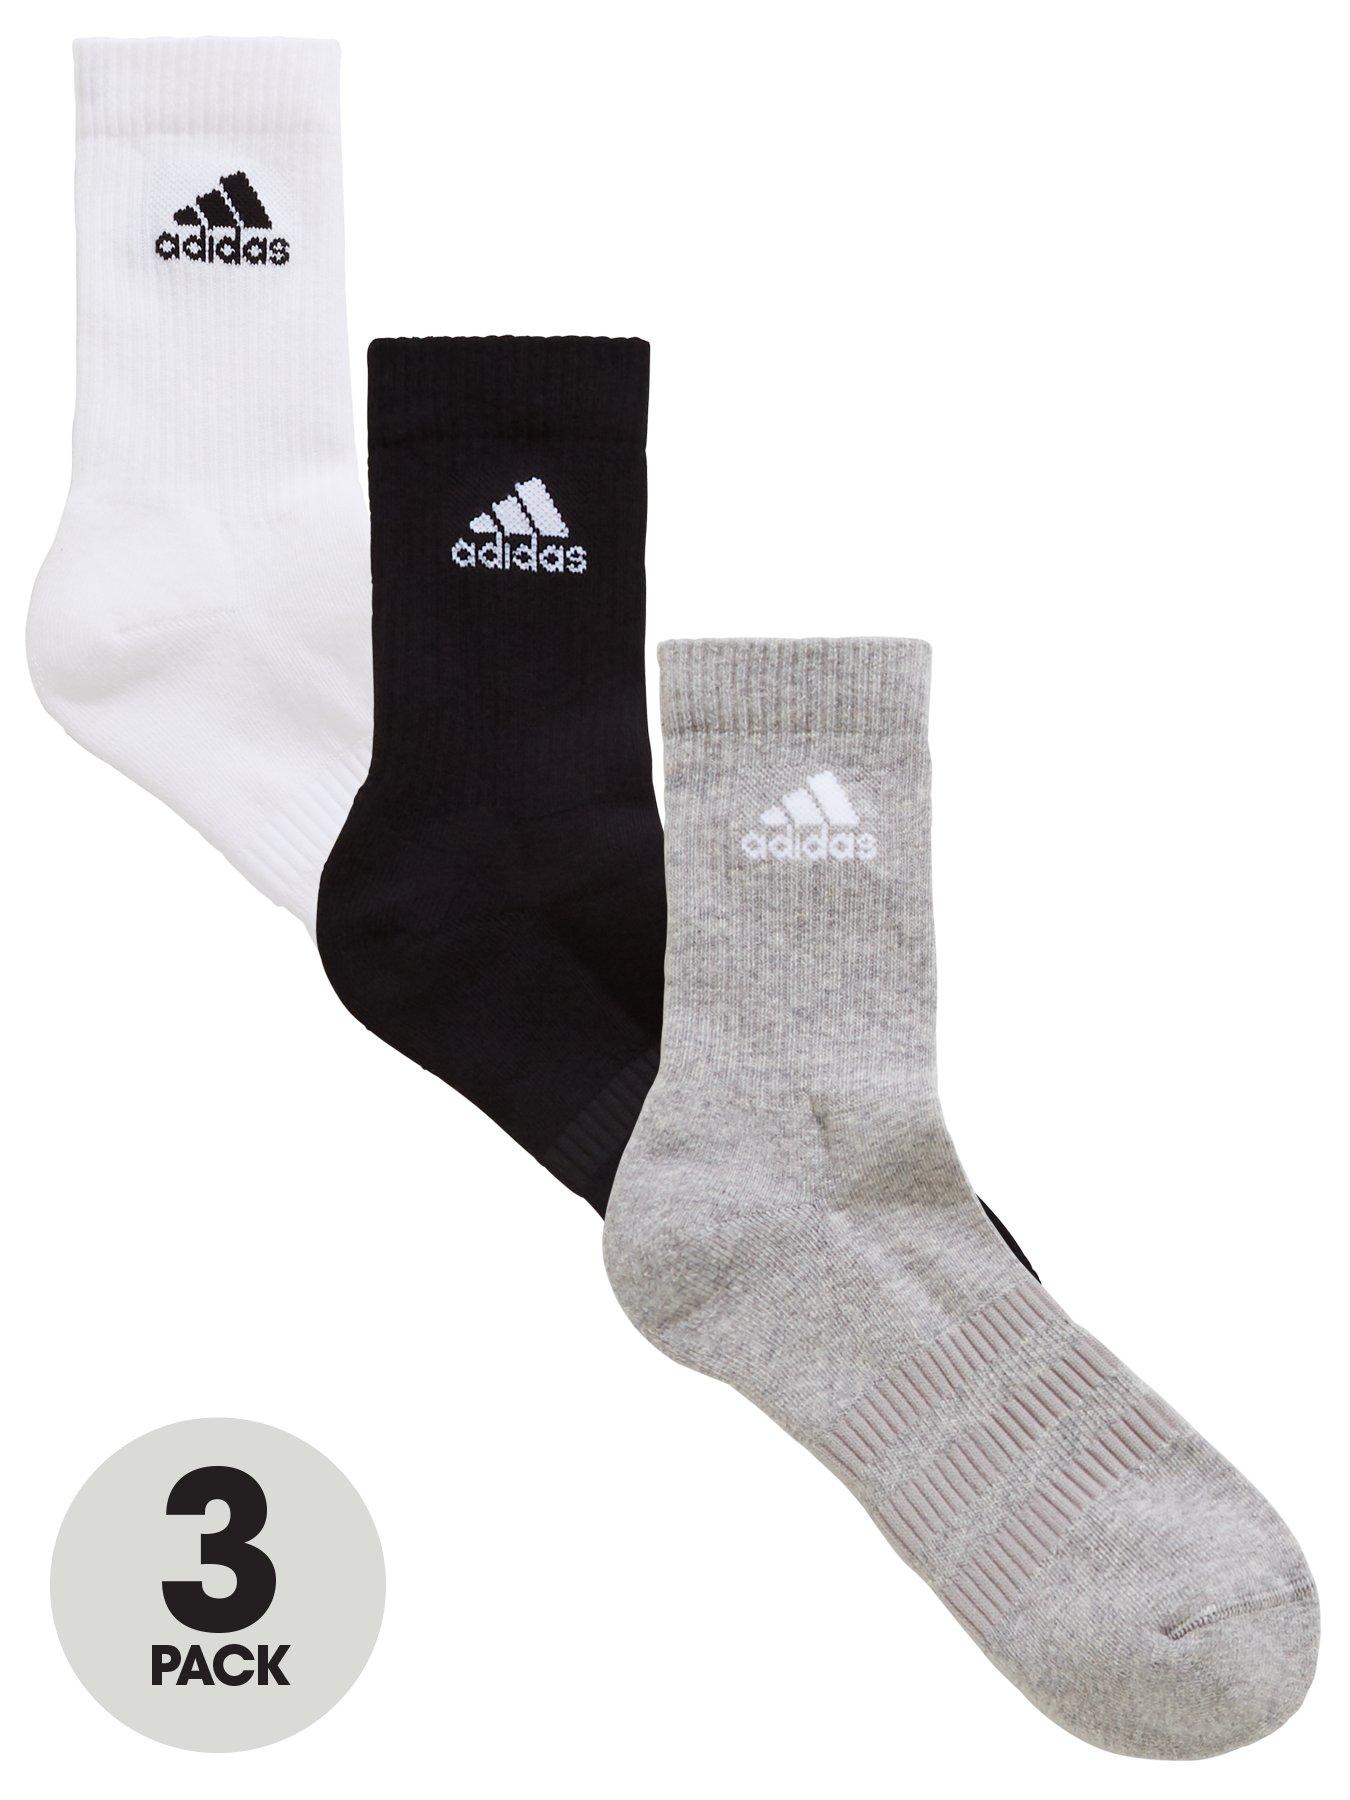 3 pack adidas socks